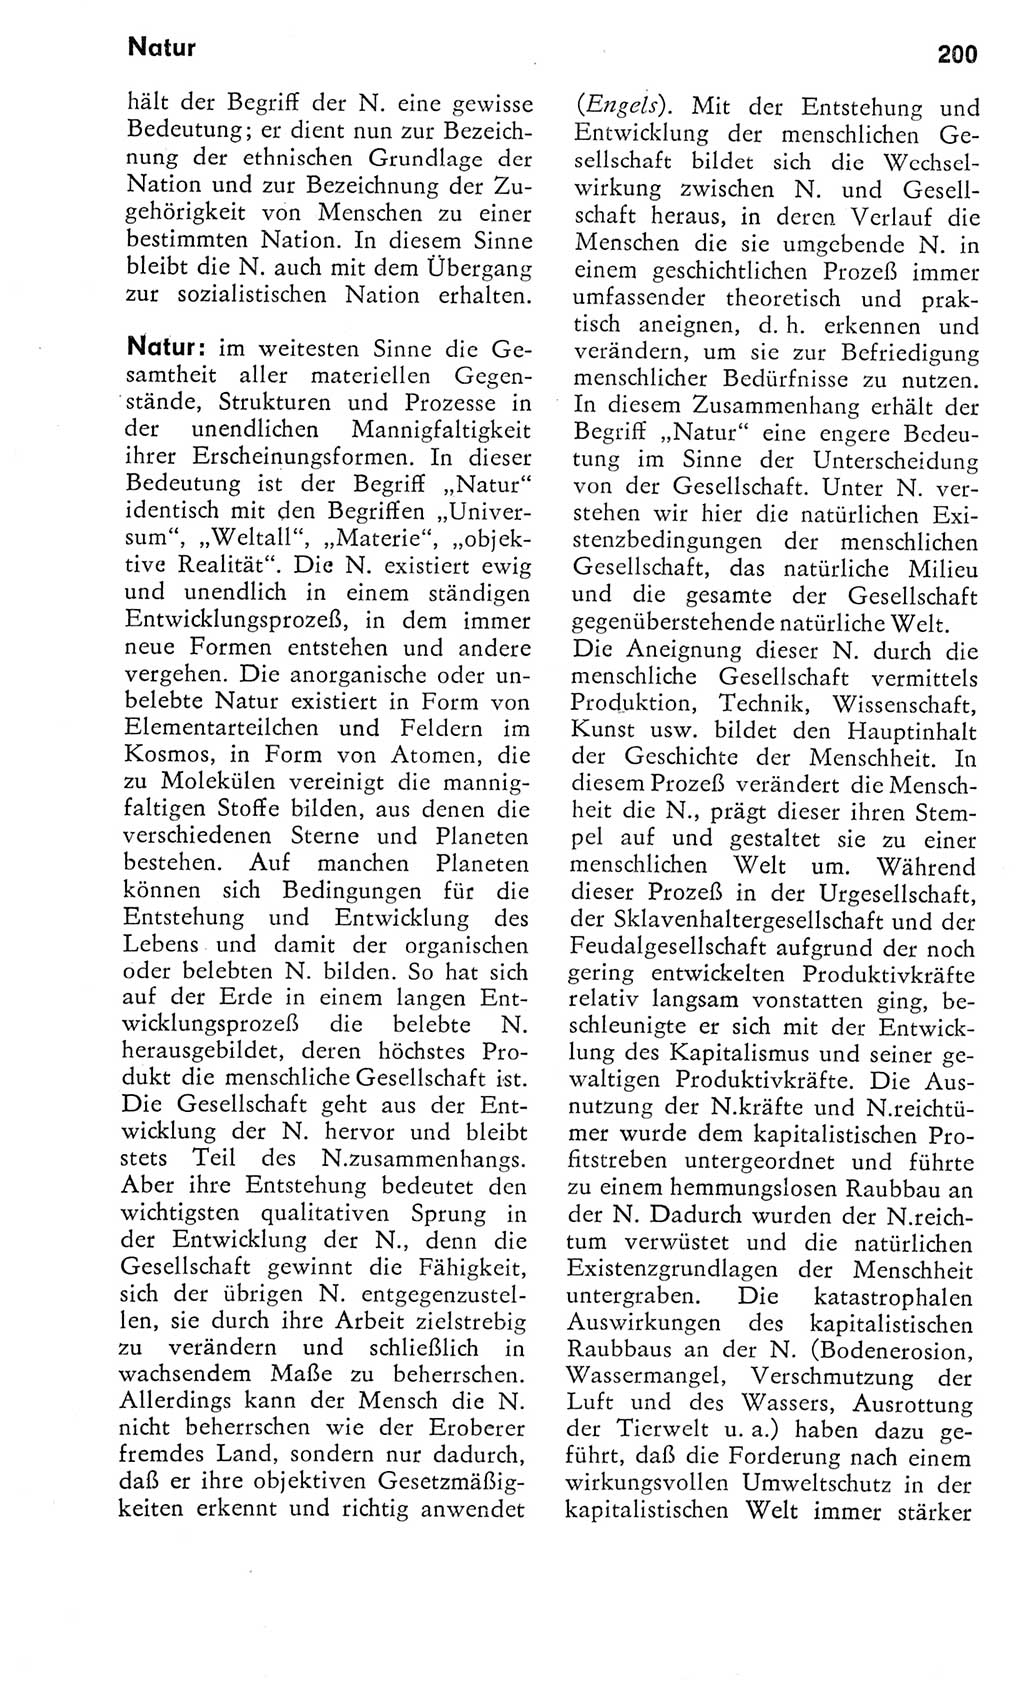 Kleines Wörterbuch der marxistisch-leninistischen Philosophie [Deutsche Demokratische Republik (DDR)] 1975, Seite 200 (Kl. Wb. ML Phil. DDR 1975, S. 200)